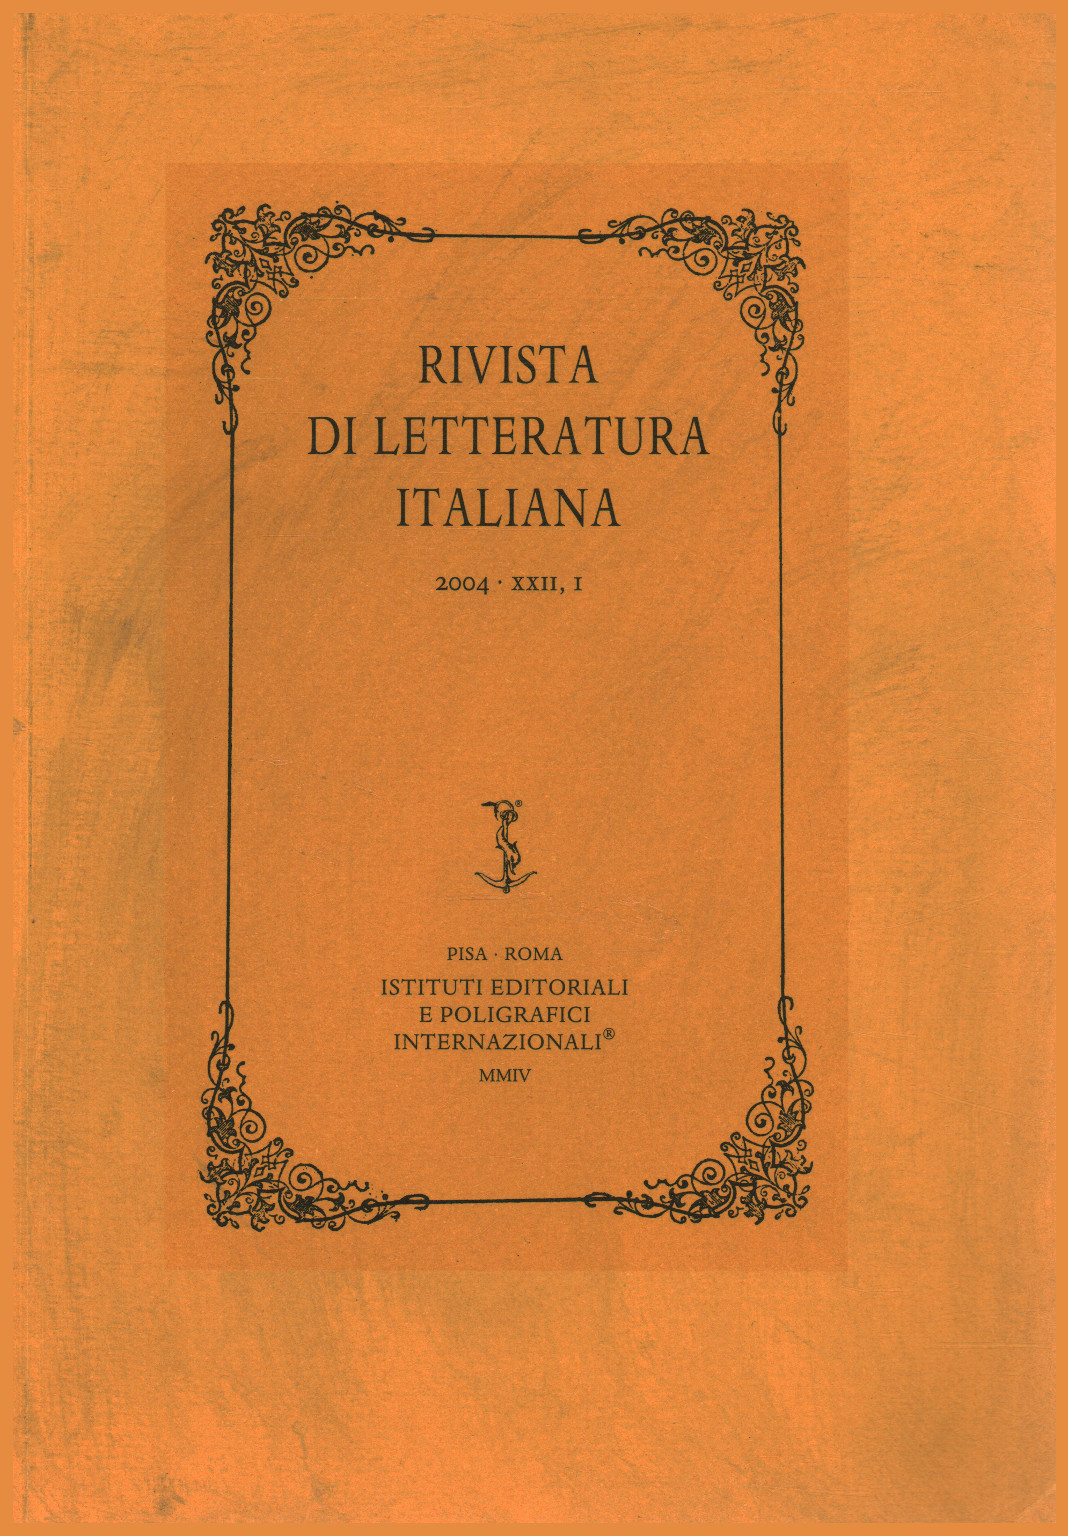 Zeitschrift für italienische literatur 2004,XXII,I, s.zu.